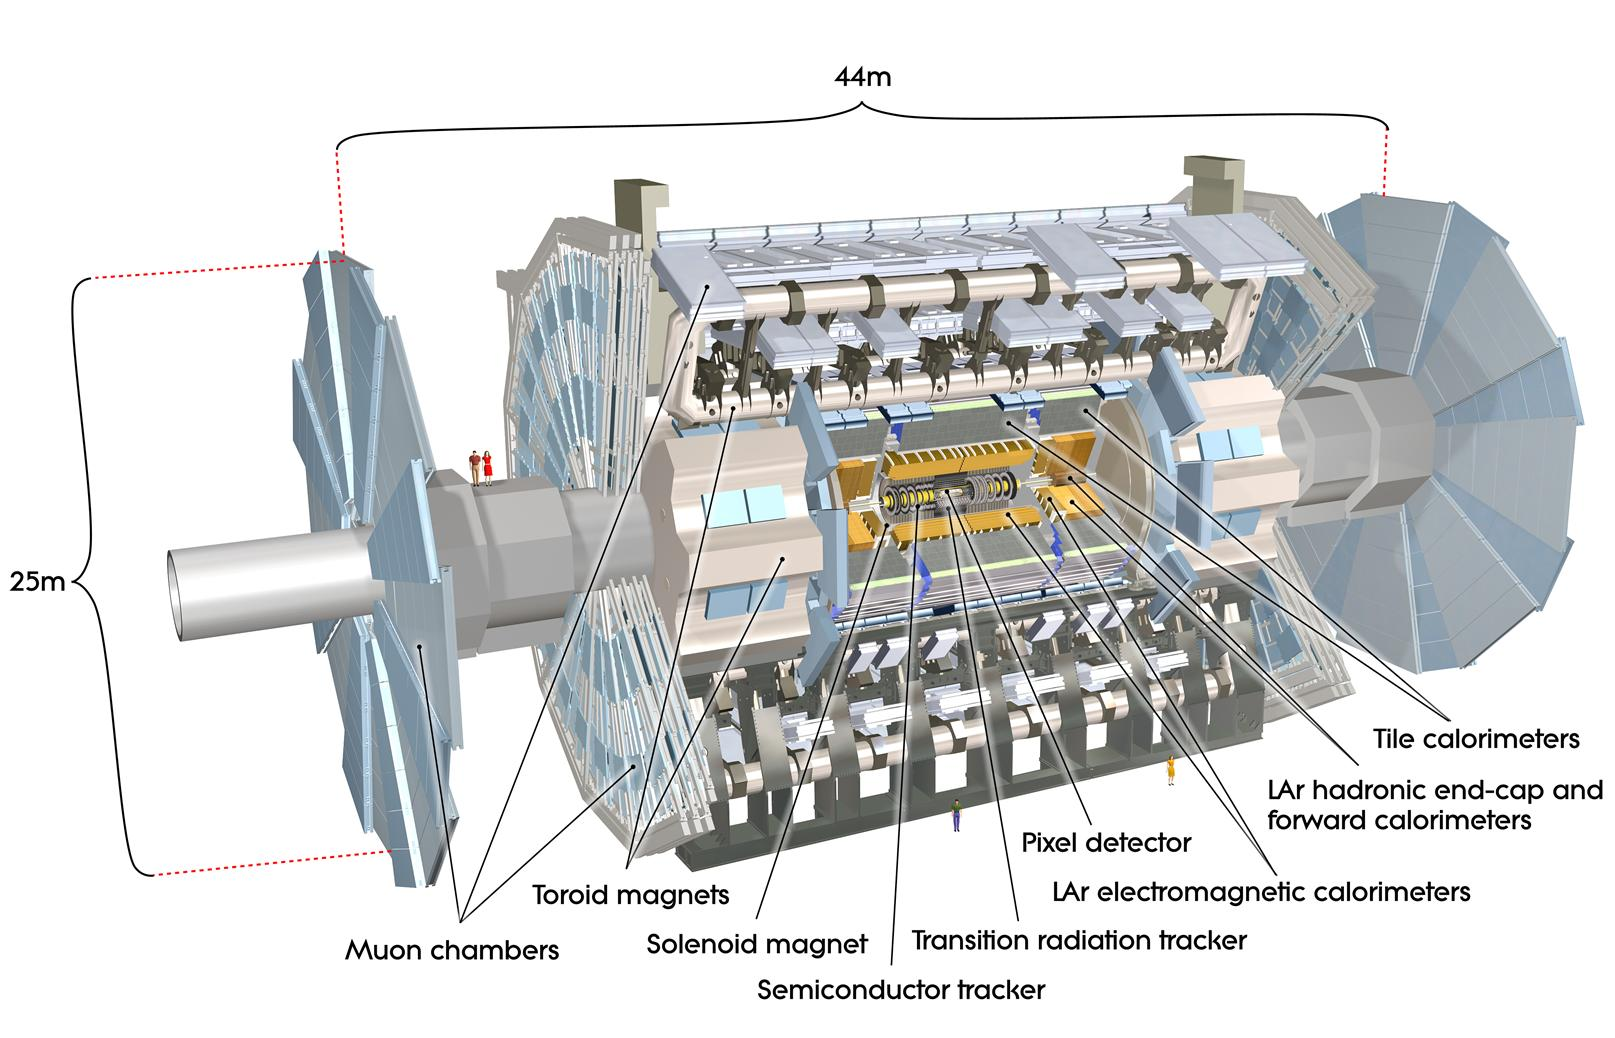 ΚΕΦΑΛΑΙΟ 1. ΘΕΩΡΗΤΙΚΗ ΕΙΣΑΓΩΓΗ 12 Σχήμα 1.3: O ανιχνευτής ATLAS SCT, (Semiconductor Tracker) και του ανιχνευτή ακτινοβολίας μετάπτωσης TRT, (Transition Radiation Tracker).